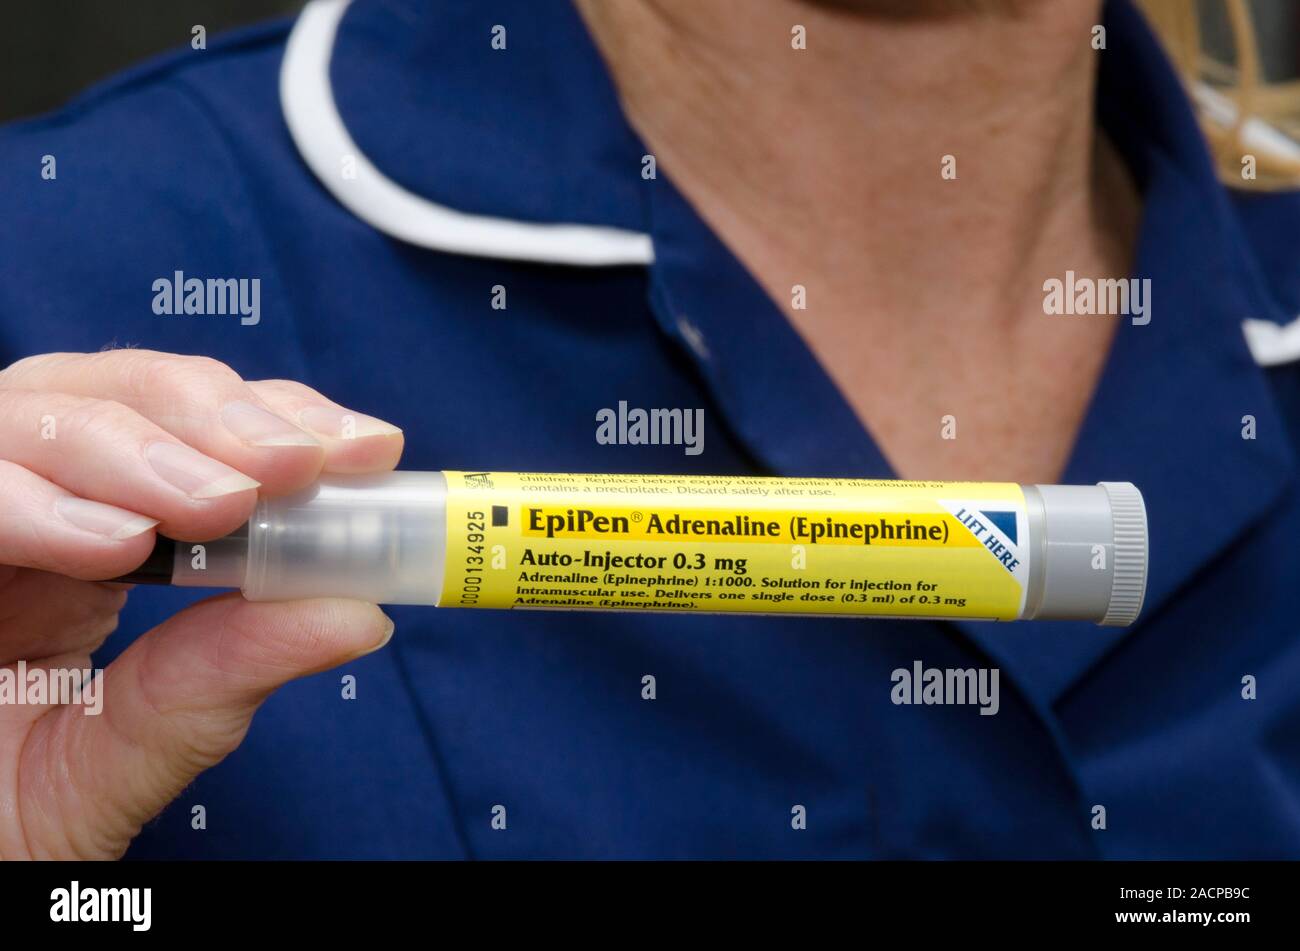 EpiPen Adrenalin Spritze (Auto-Injektor) durchgeführt und vom Patienten  selbst verwendet - in der Behandlung der anaphylaktischen Schock  injizieren, eine Art allergische Reak Stockfotografie - Alamy